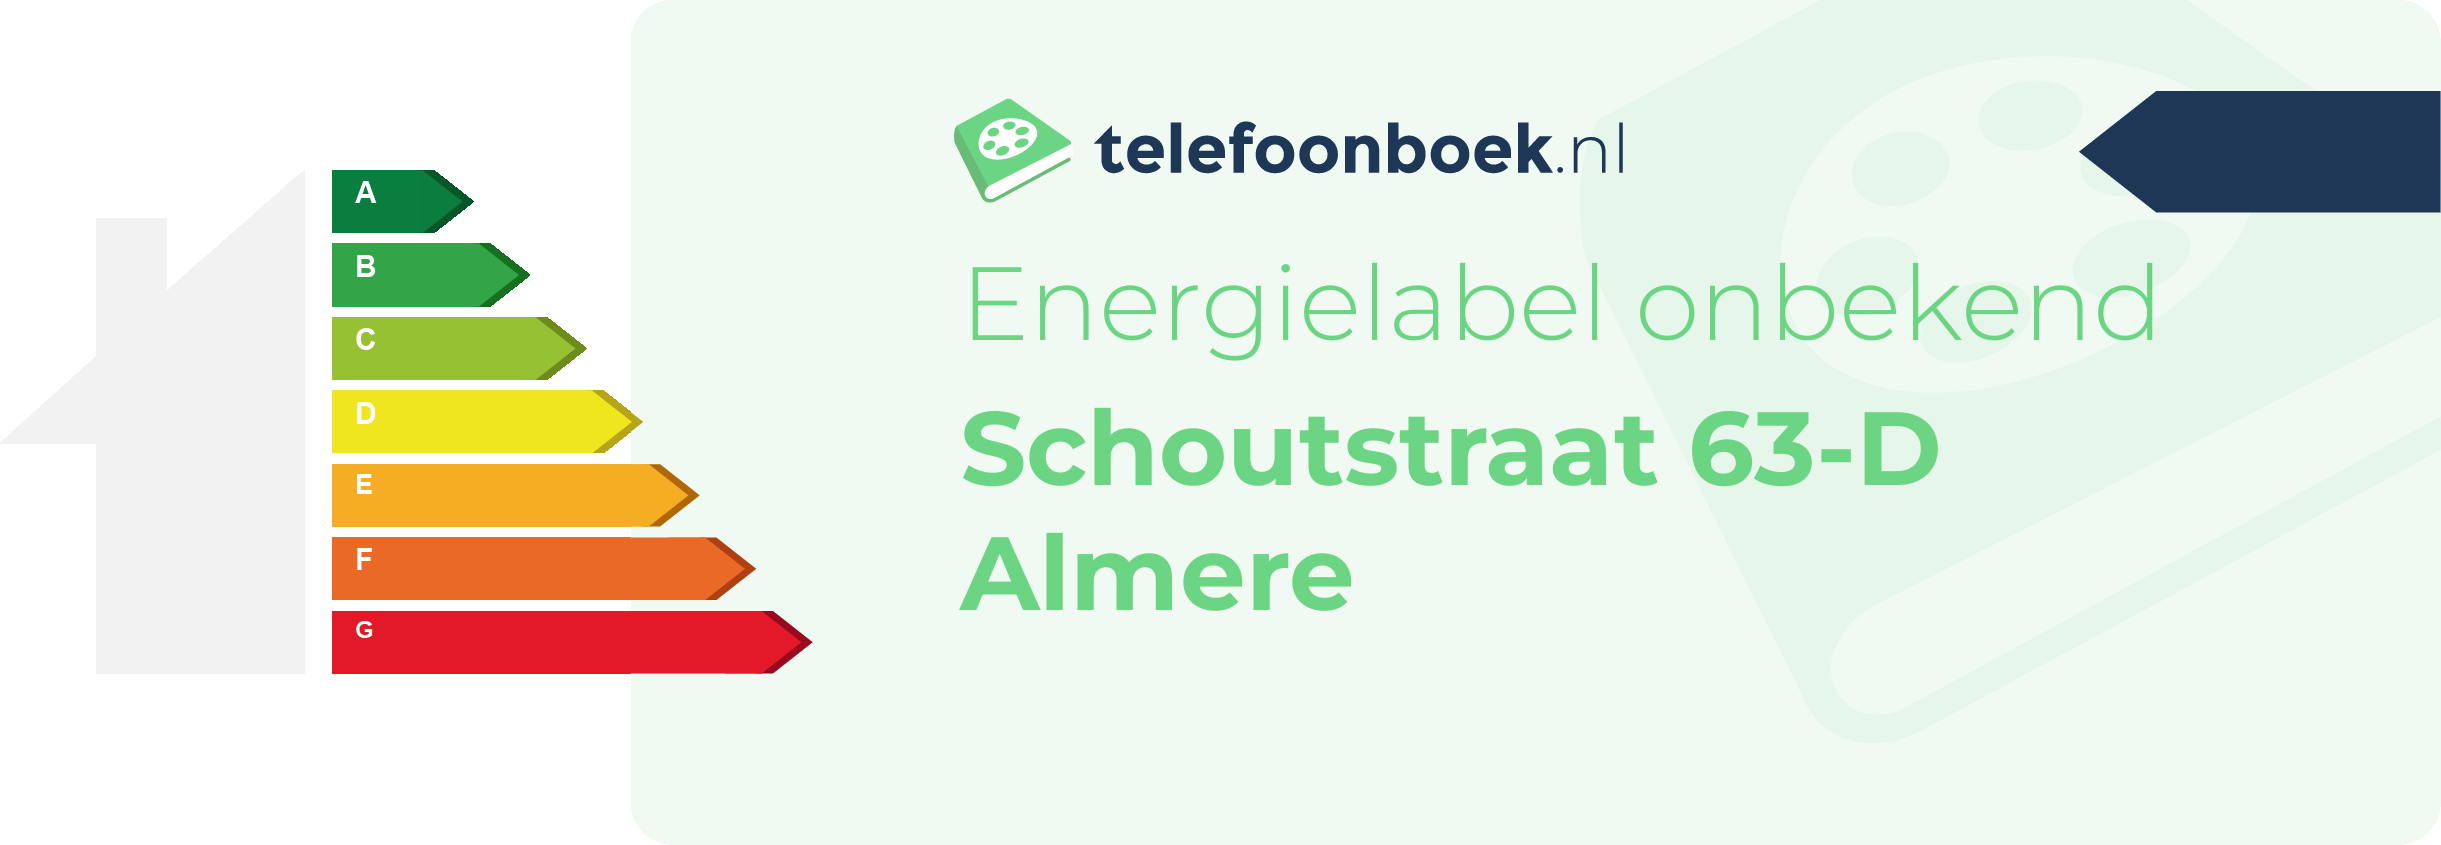 Energielabel Schoutstraat 63-D Almere